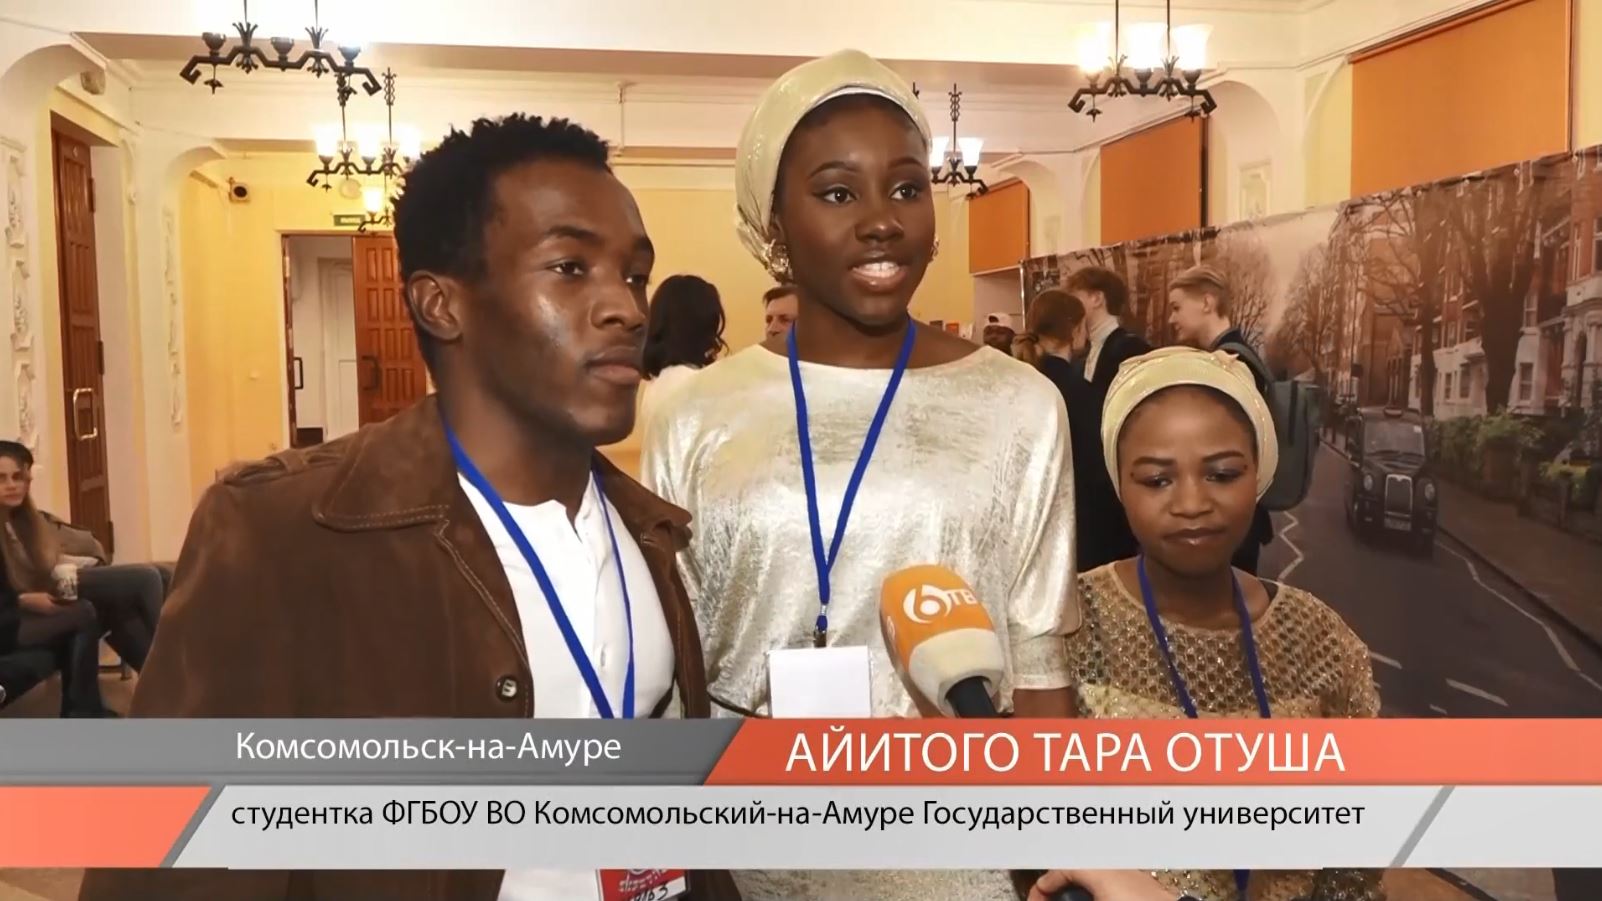 Иностранные студенты КнАГУ приняли участие в фестивале "Битломания"